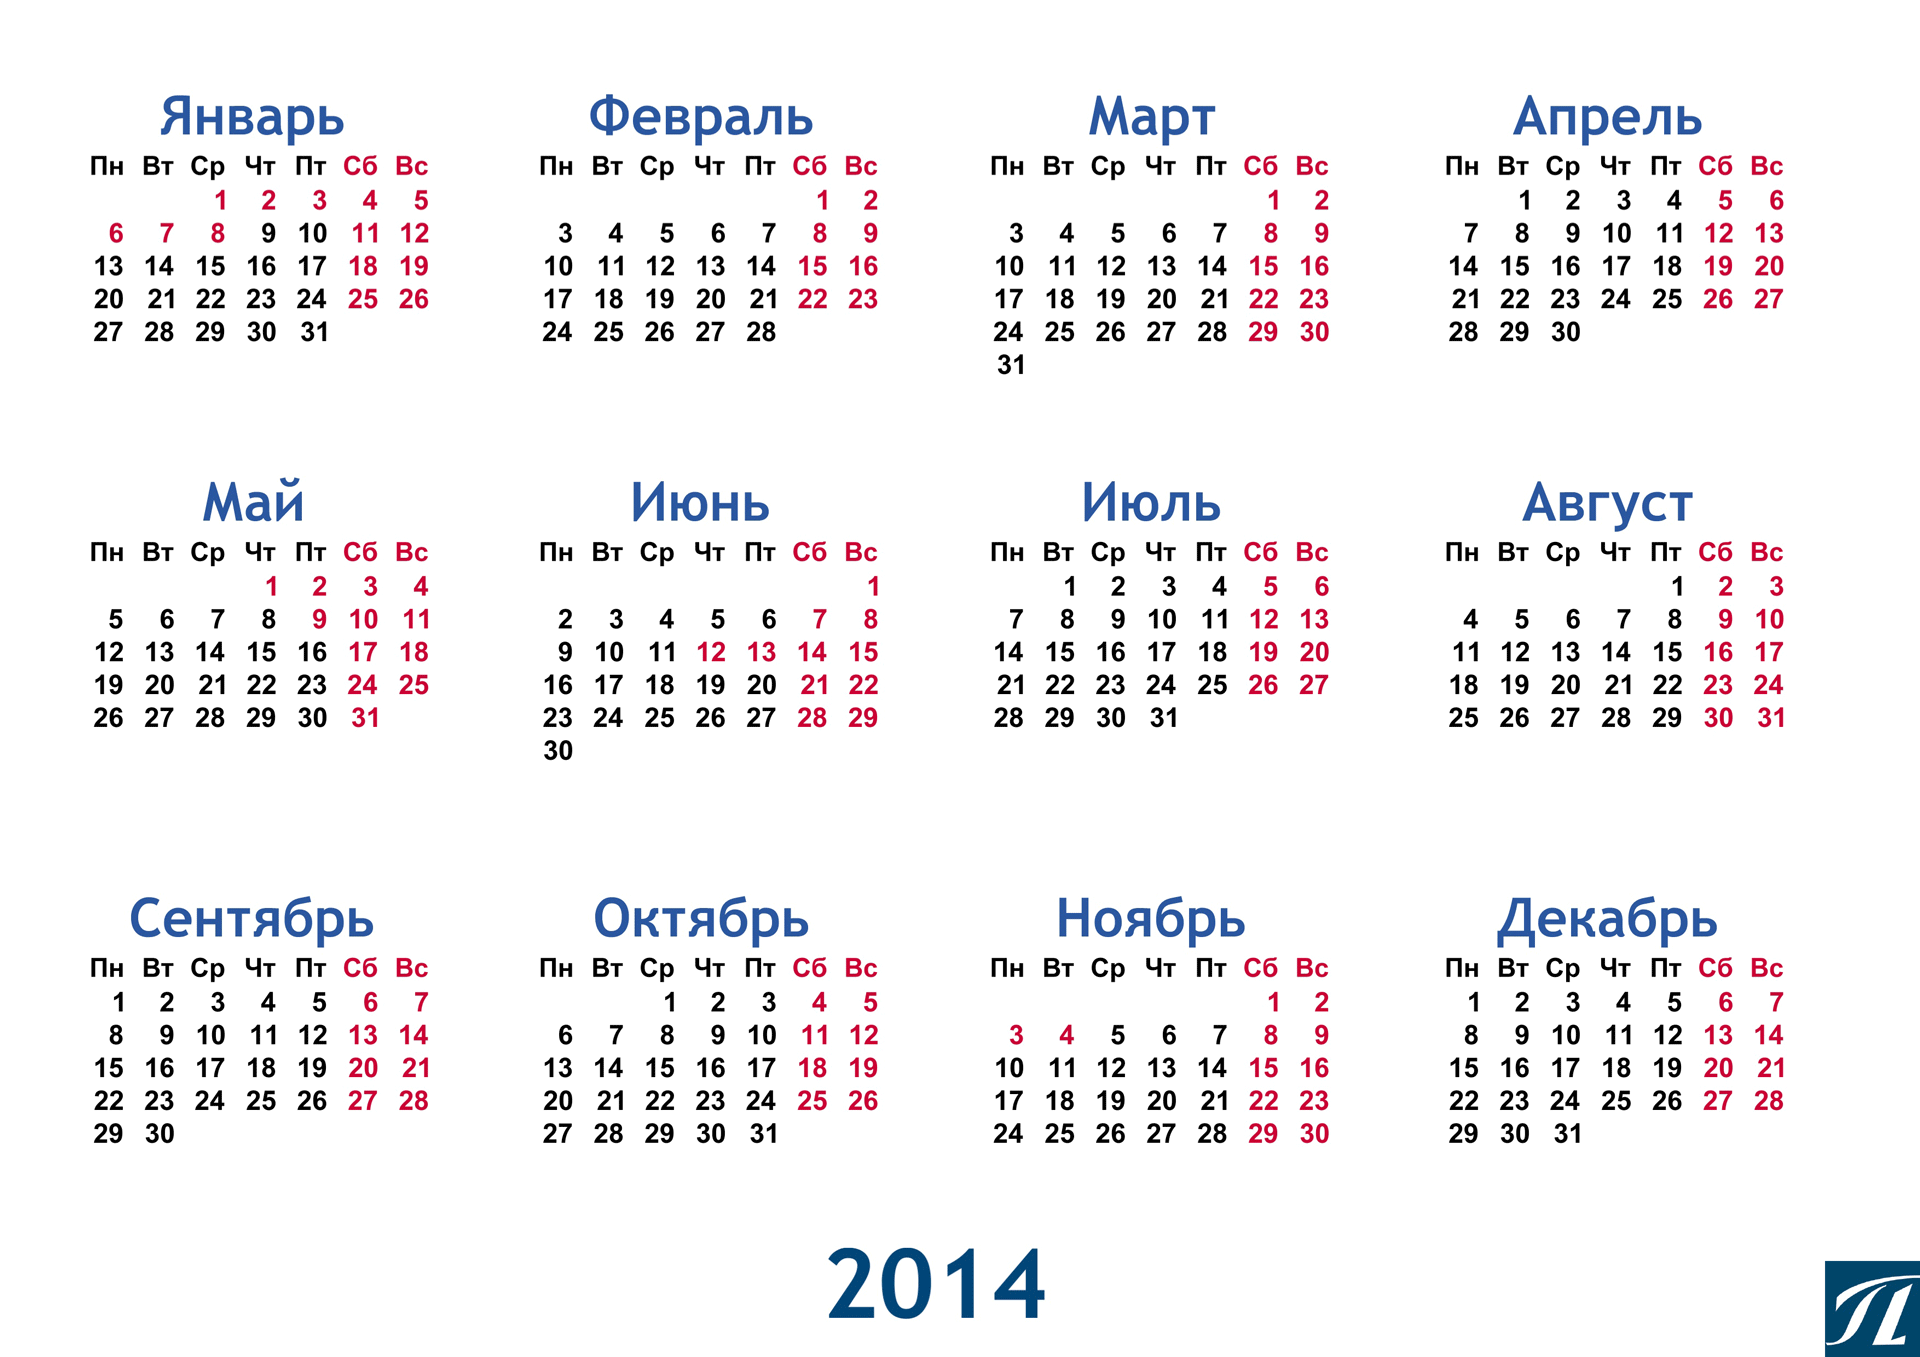 Календарь дней 2015. Календарь 2014 года. Календарь 2014 года с праздниками. Календарь на 2014 год с праздниками и выходными. Календарь 2014 года по месяцам.